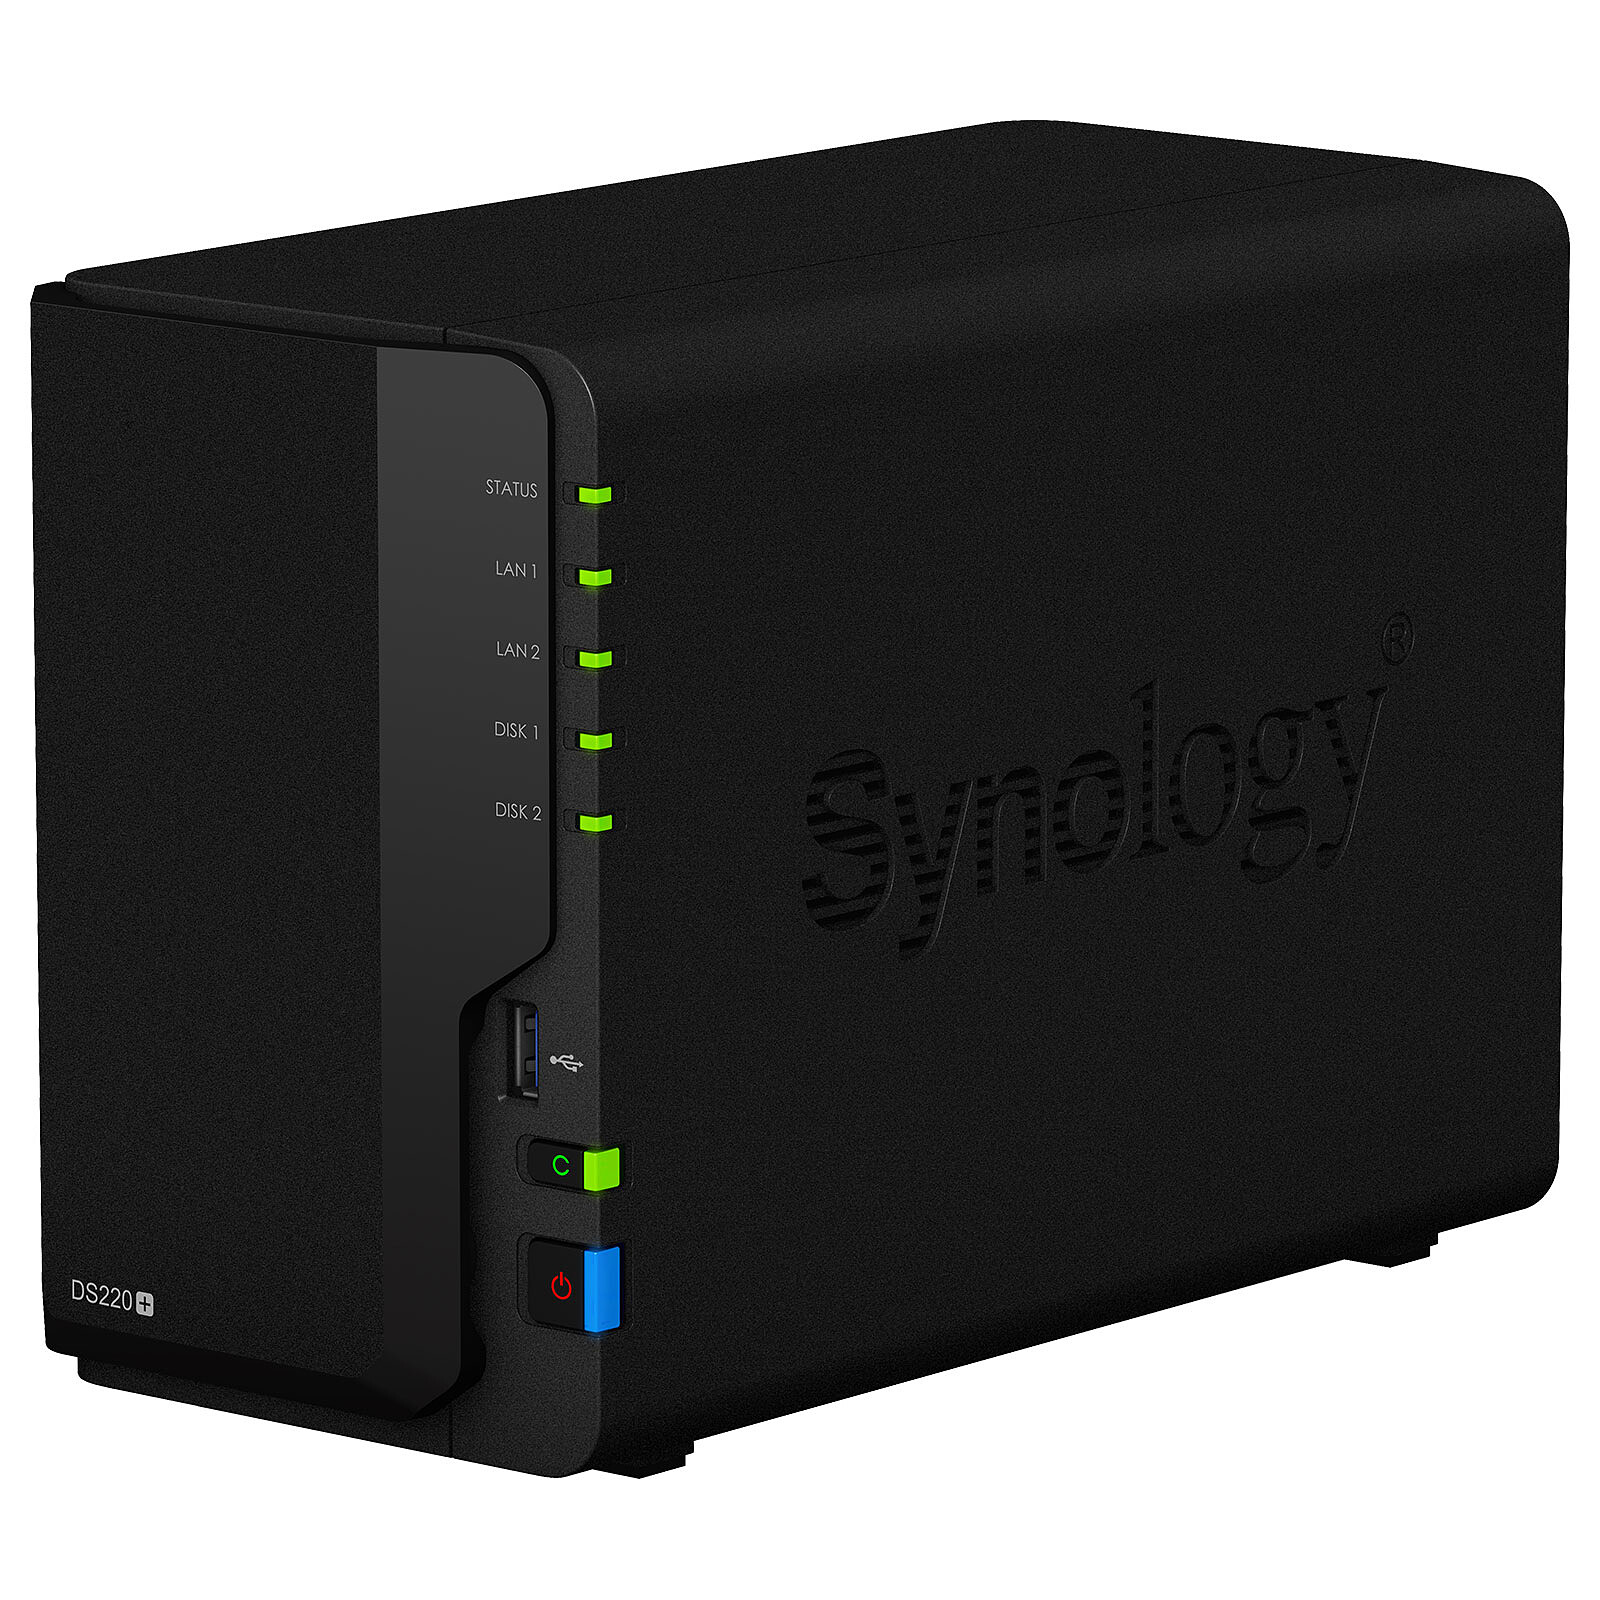 Synology : lancement des Plus-HDD pour les serveurs personnels et de bureau  - ITdaily.